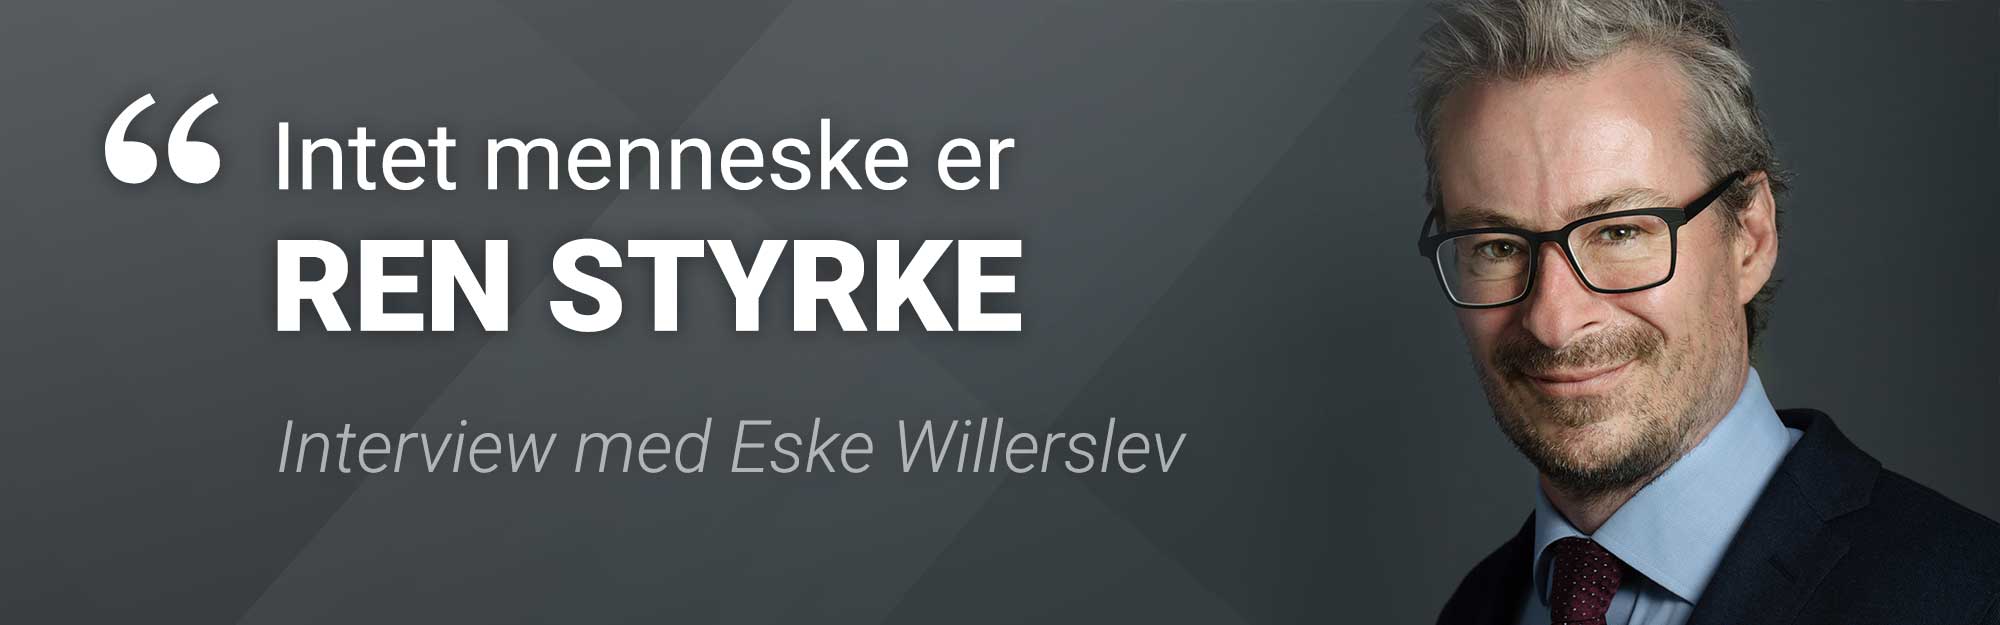 Eske Willerslev: Intet menneske er ren styrke